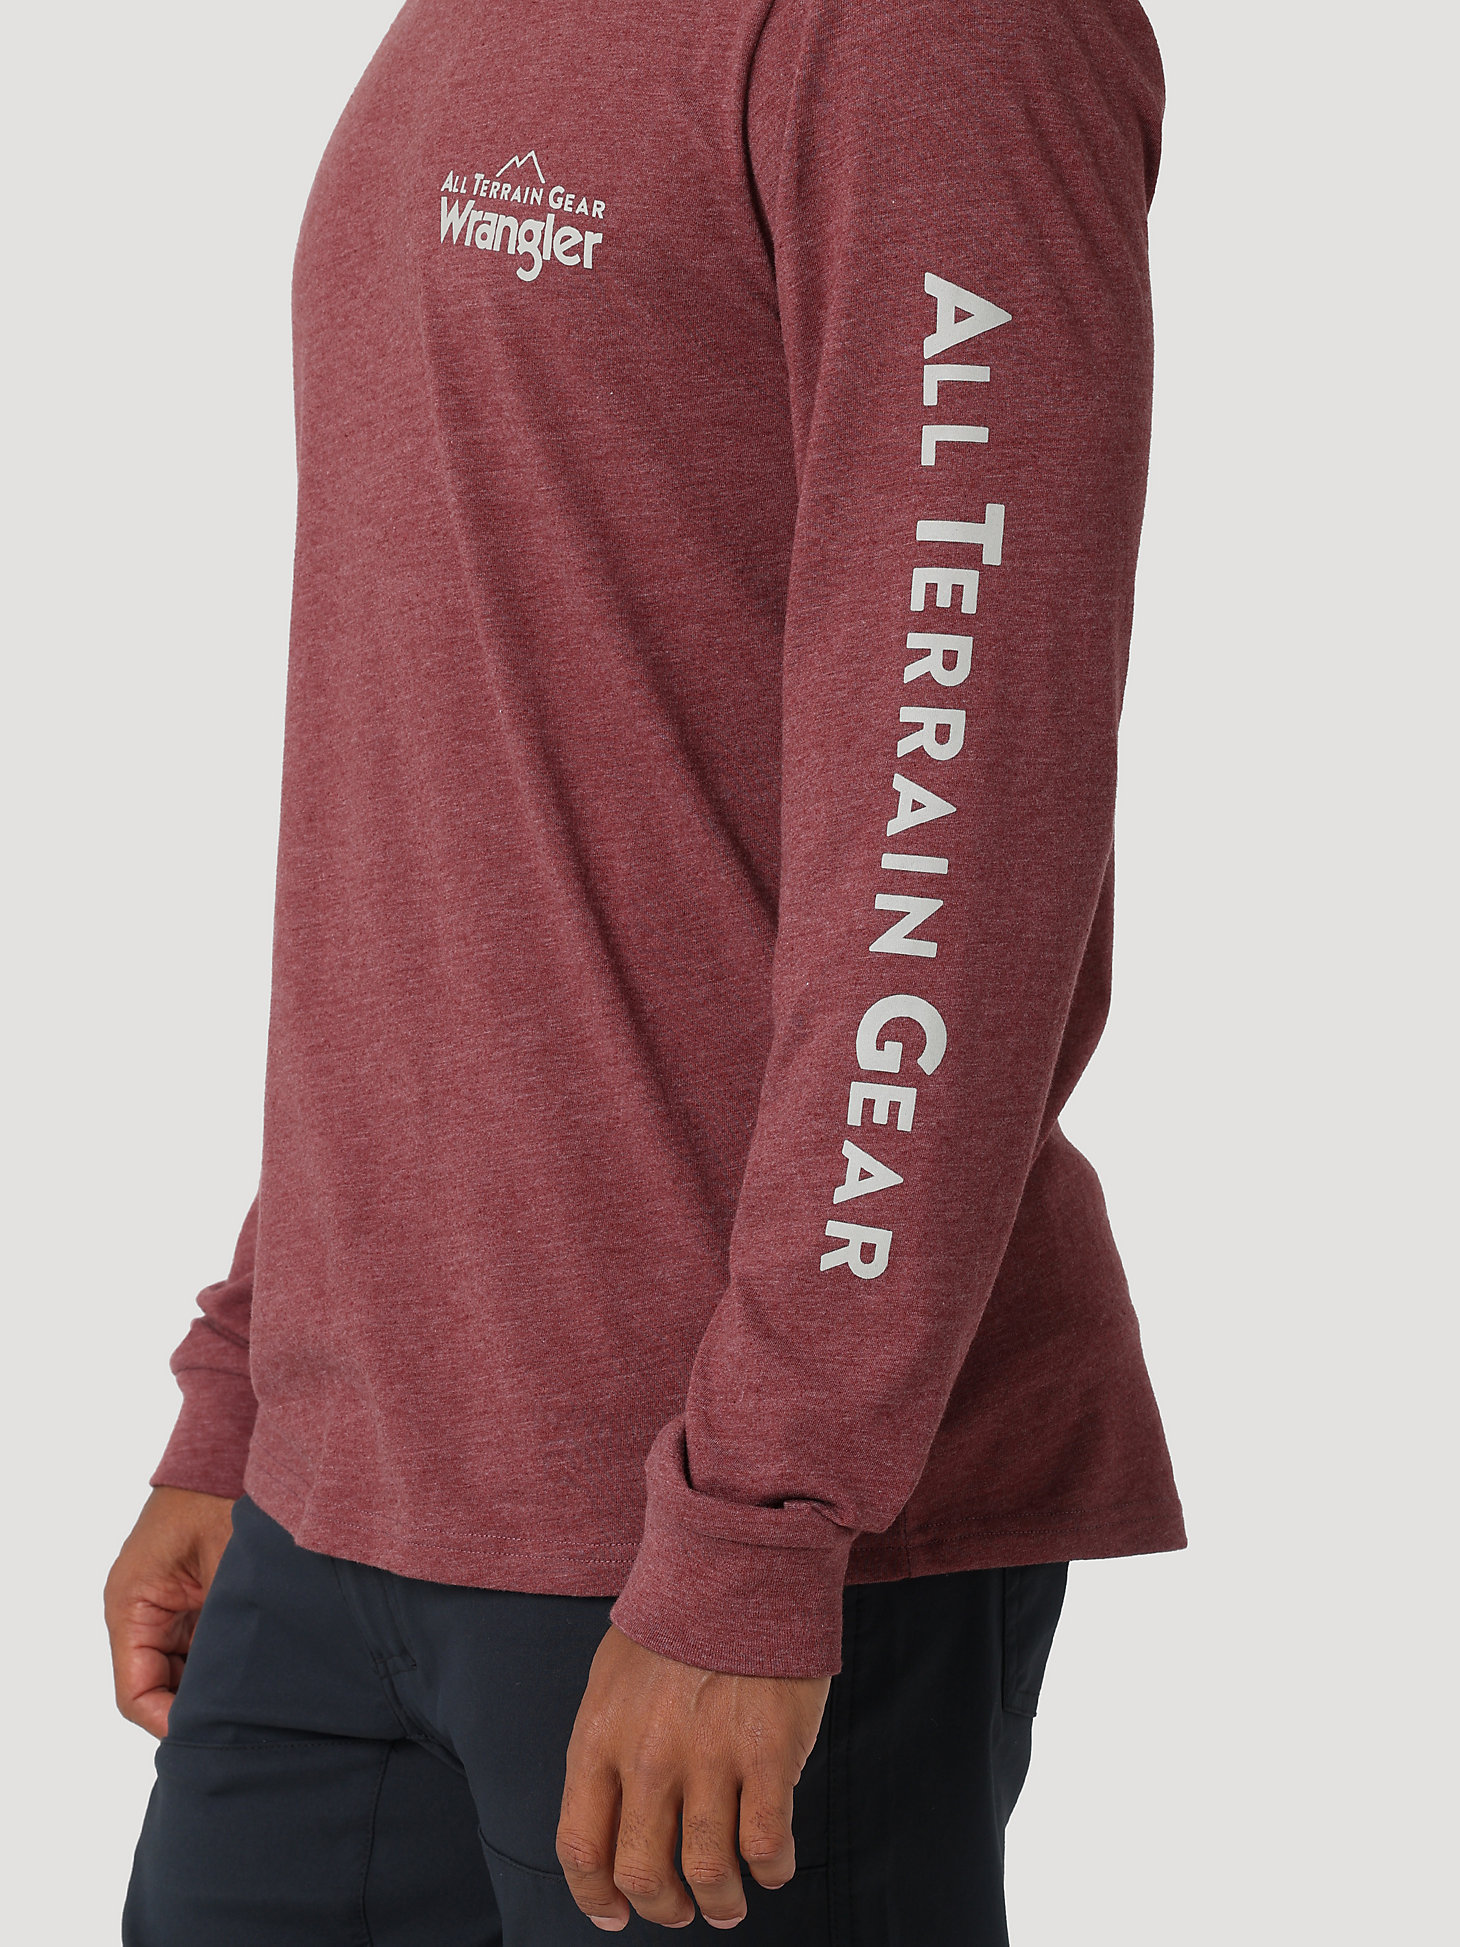 ATG By Wrangler™ Men's Long Sleeve Logo T-Shirt in Burgundy alternative view 2